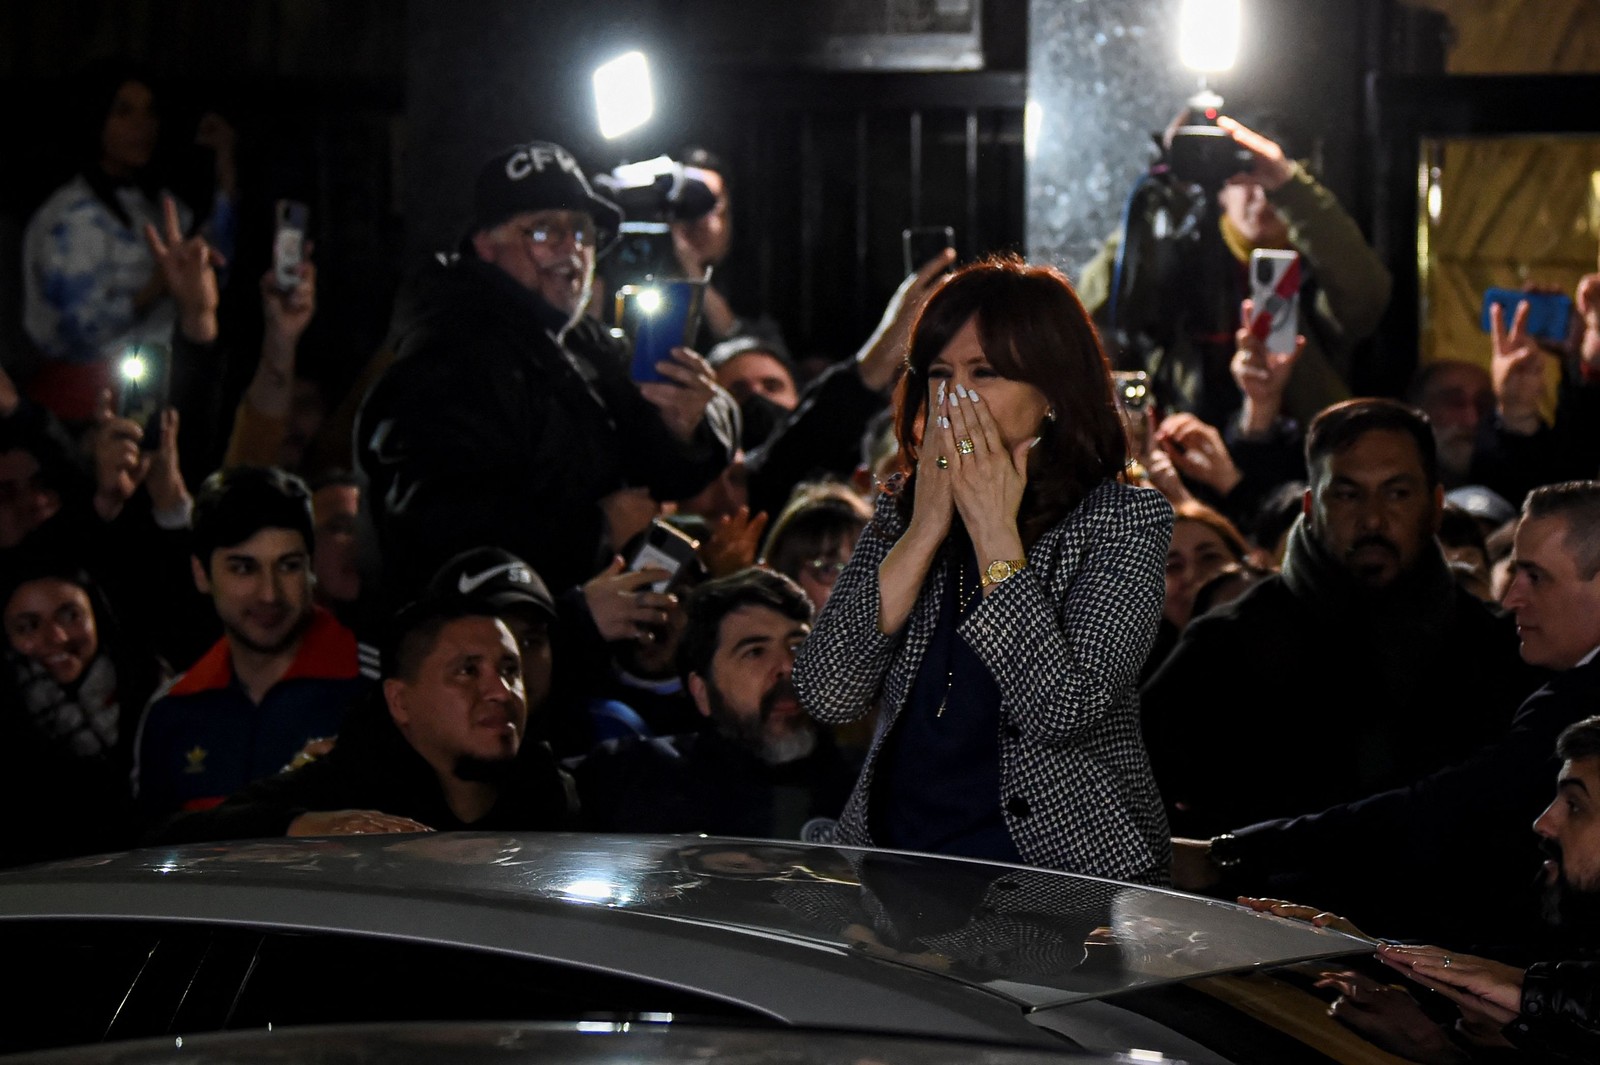 Cristina Kirchner cumprimenta apoiadores  do lado de fora de sua residência em Buenos Aires — Foto: Luis ROBAYO / AF